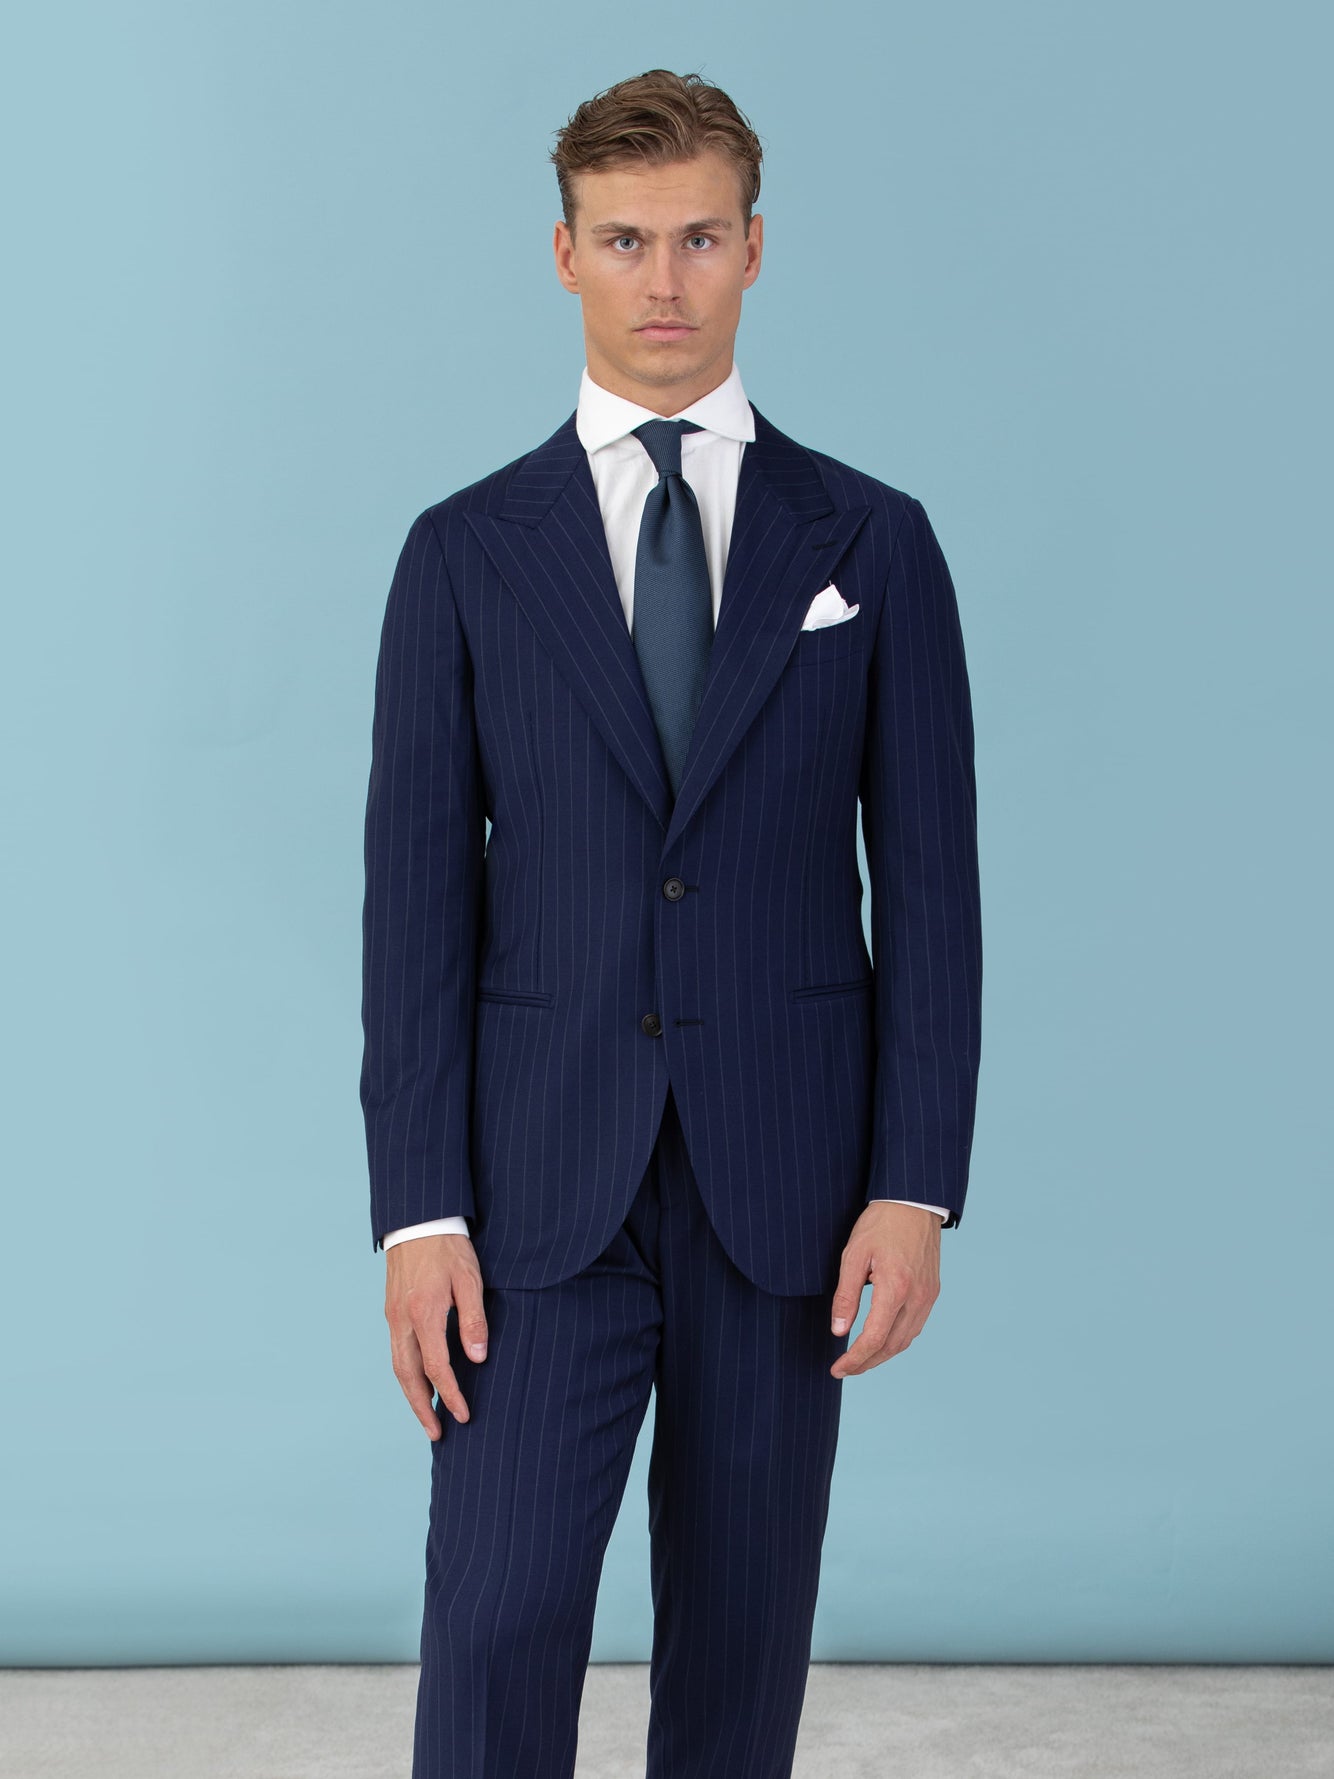 https://grandlemar.com/cdn/shop/files/grand-le-mar-suits-navy-pinstripe-suit-grand-le-mar-black-linen-suit-53753356026193_1334x2000.jpg?v=1695090338